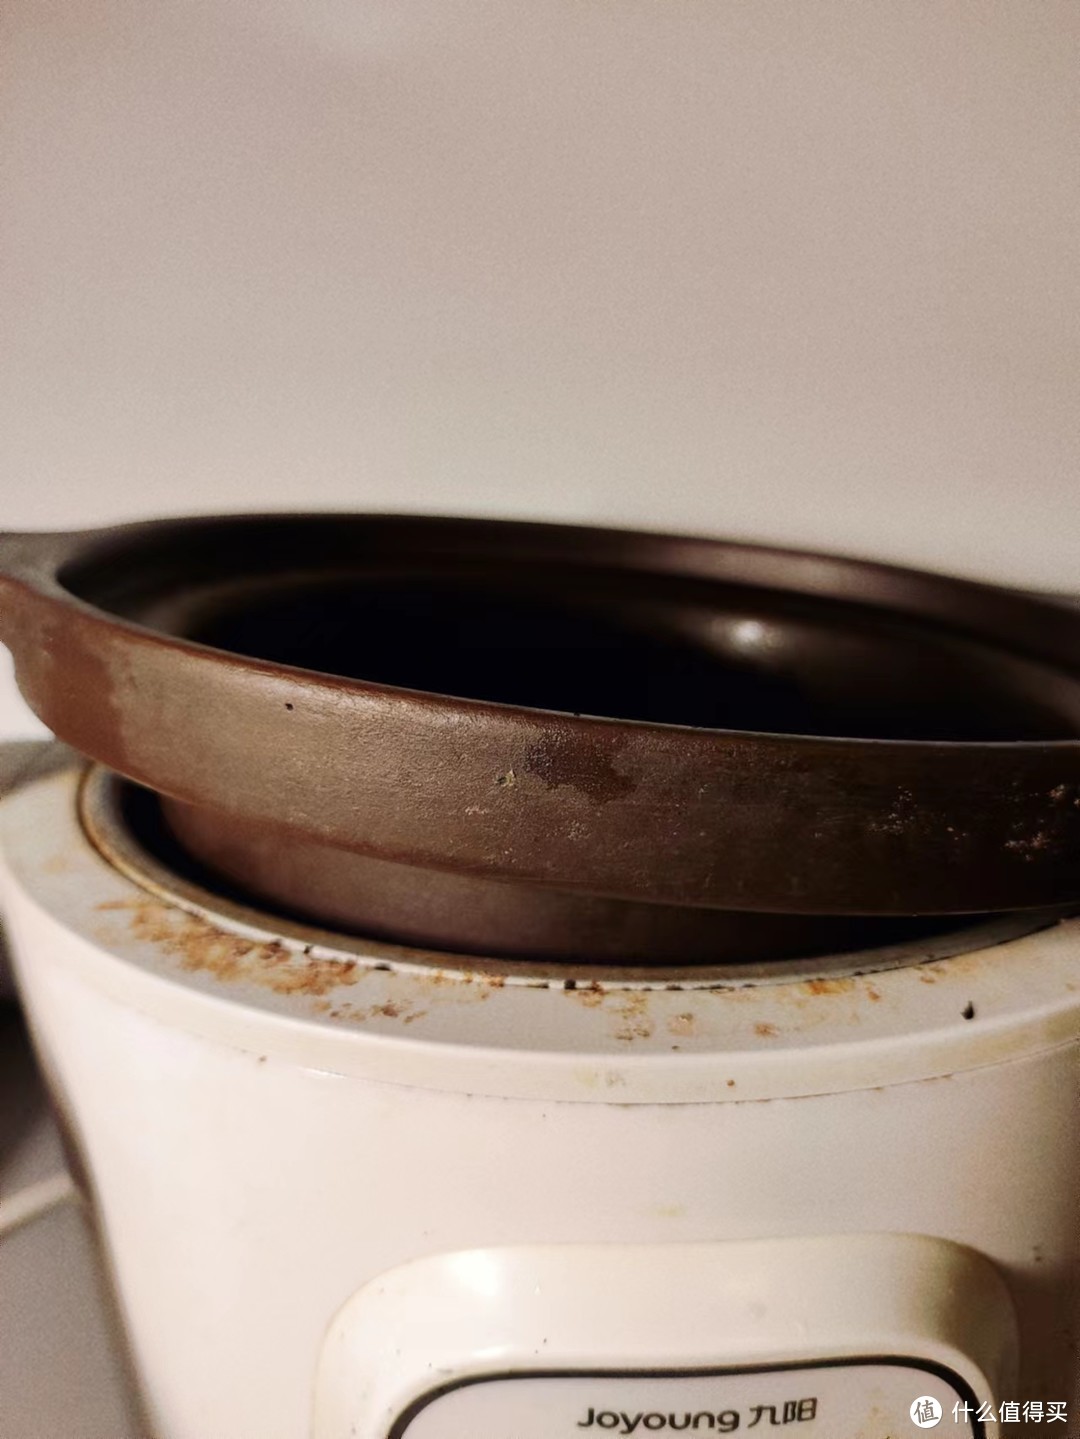 煲汤最好用的一个插电锅，是我的家用电器里最好用的一个